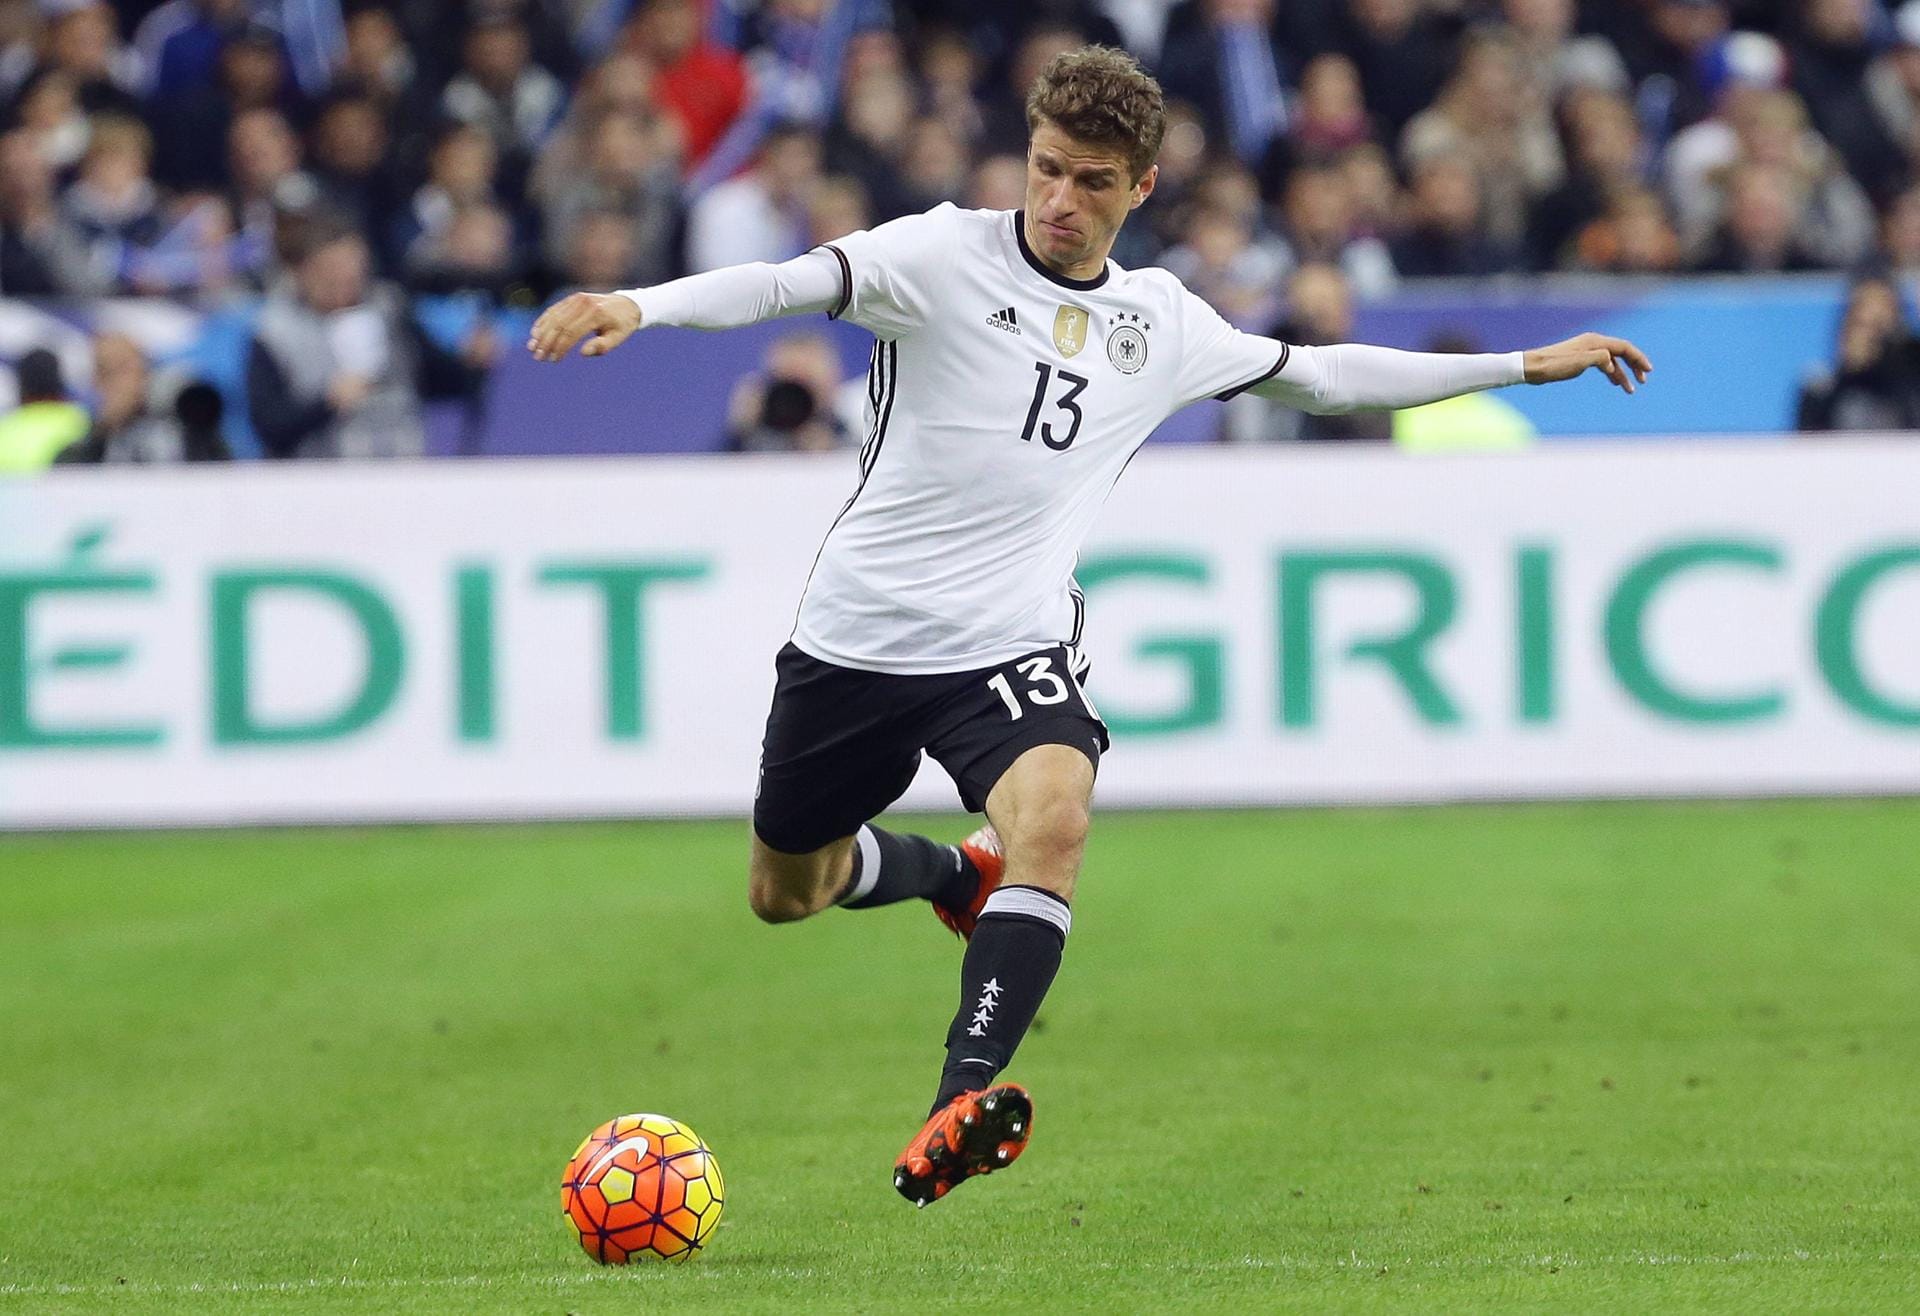 Deutschland gehört als Weltmeister zu den Top-Favoriten bei der EM 2016 in Frankreich. Einer der Schlüsselspieler der DFB-Auswahl ist dabei Thomas Müller, der sein viertes großes Turnier spielt.